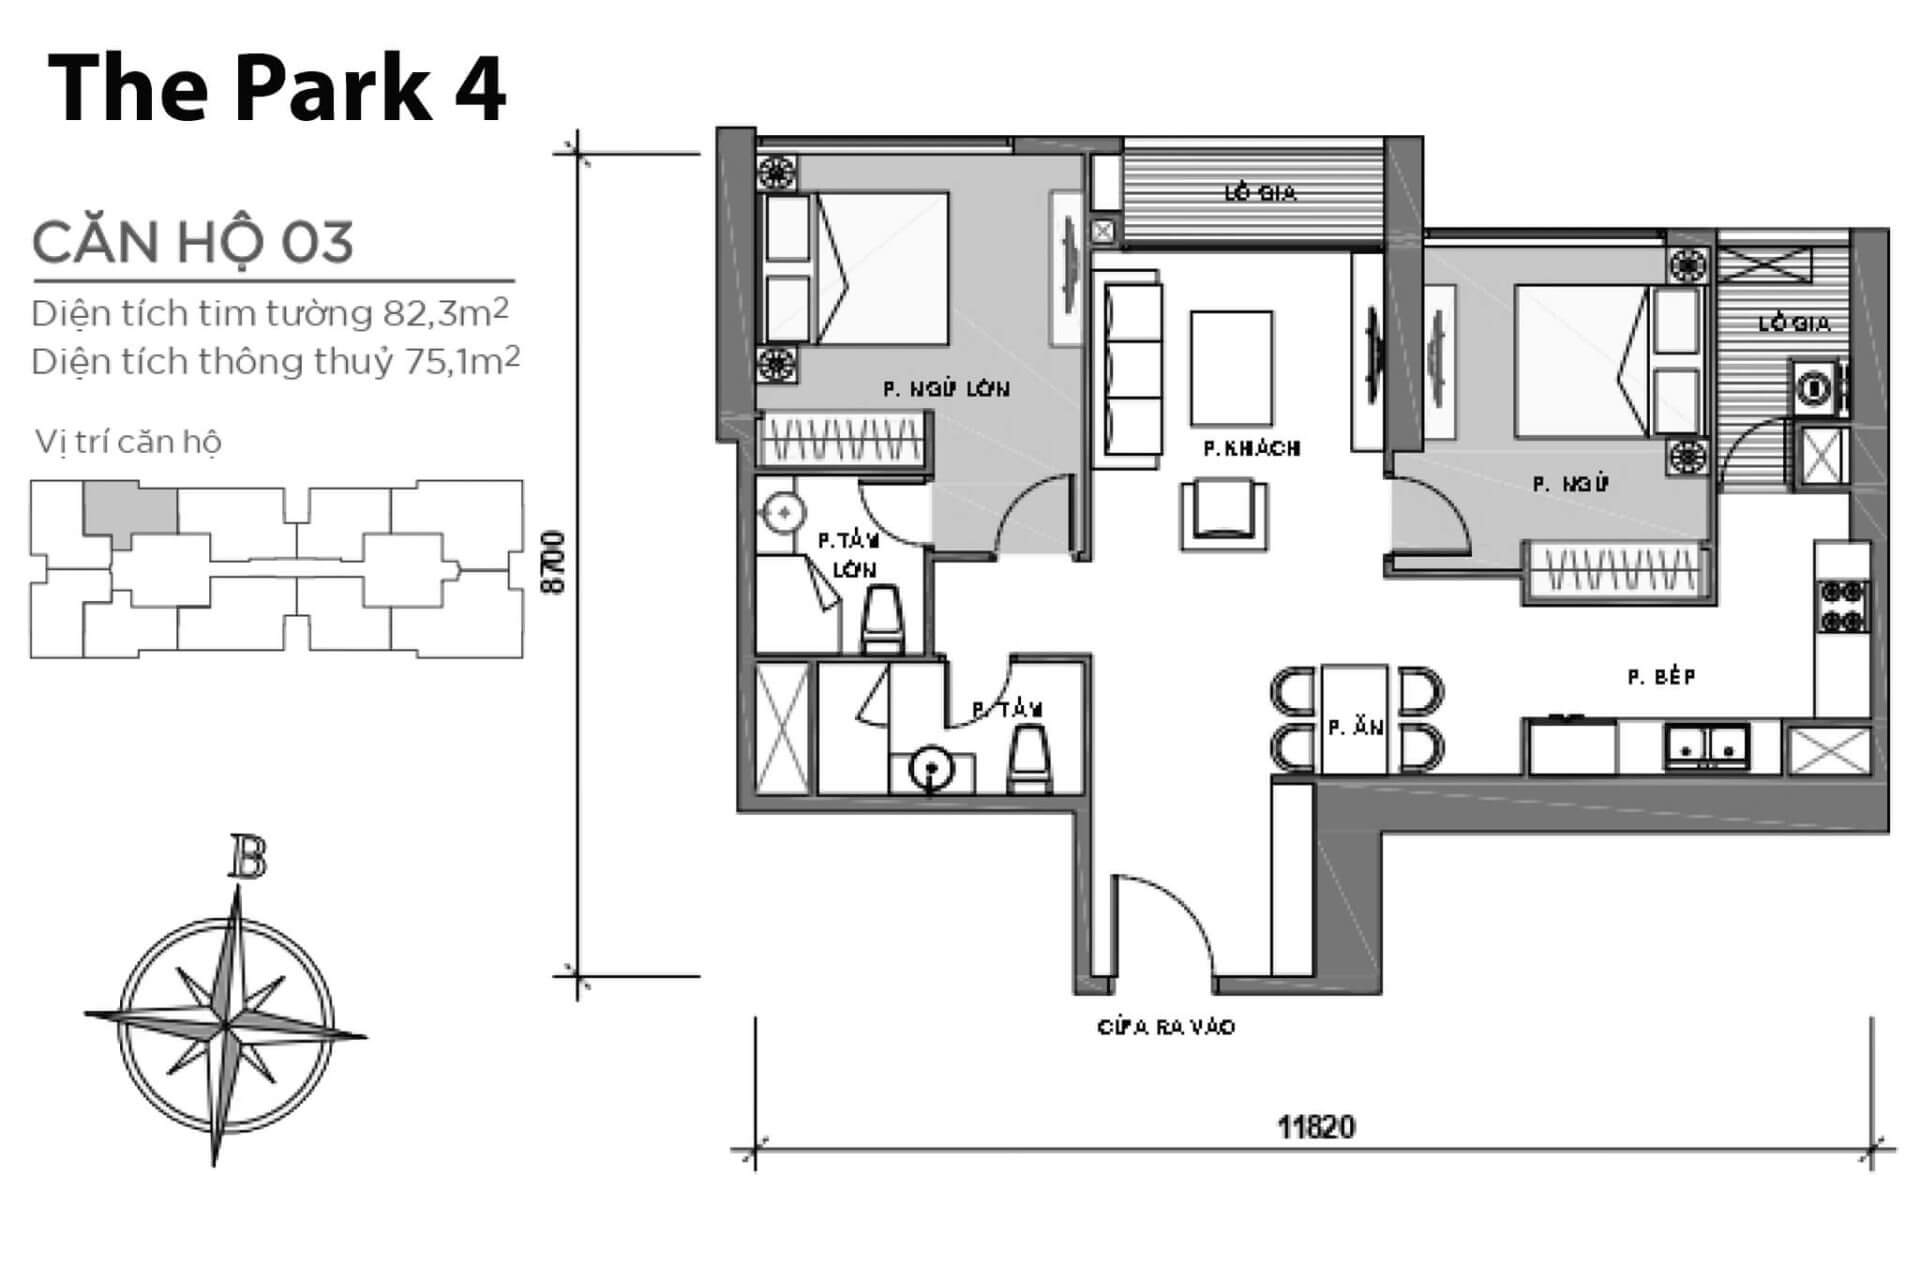 mặt bằng layout căn hộ số 03 Park 4 Vinhomes Central Park